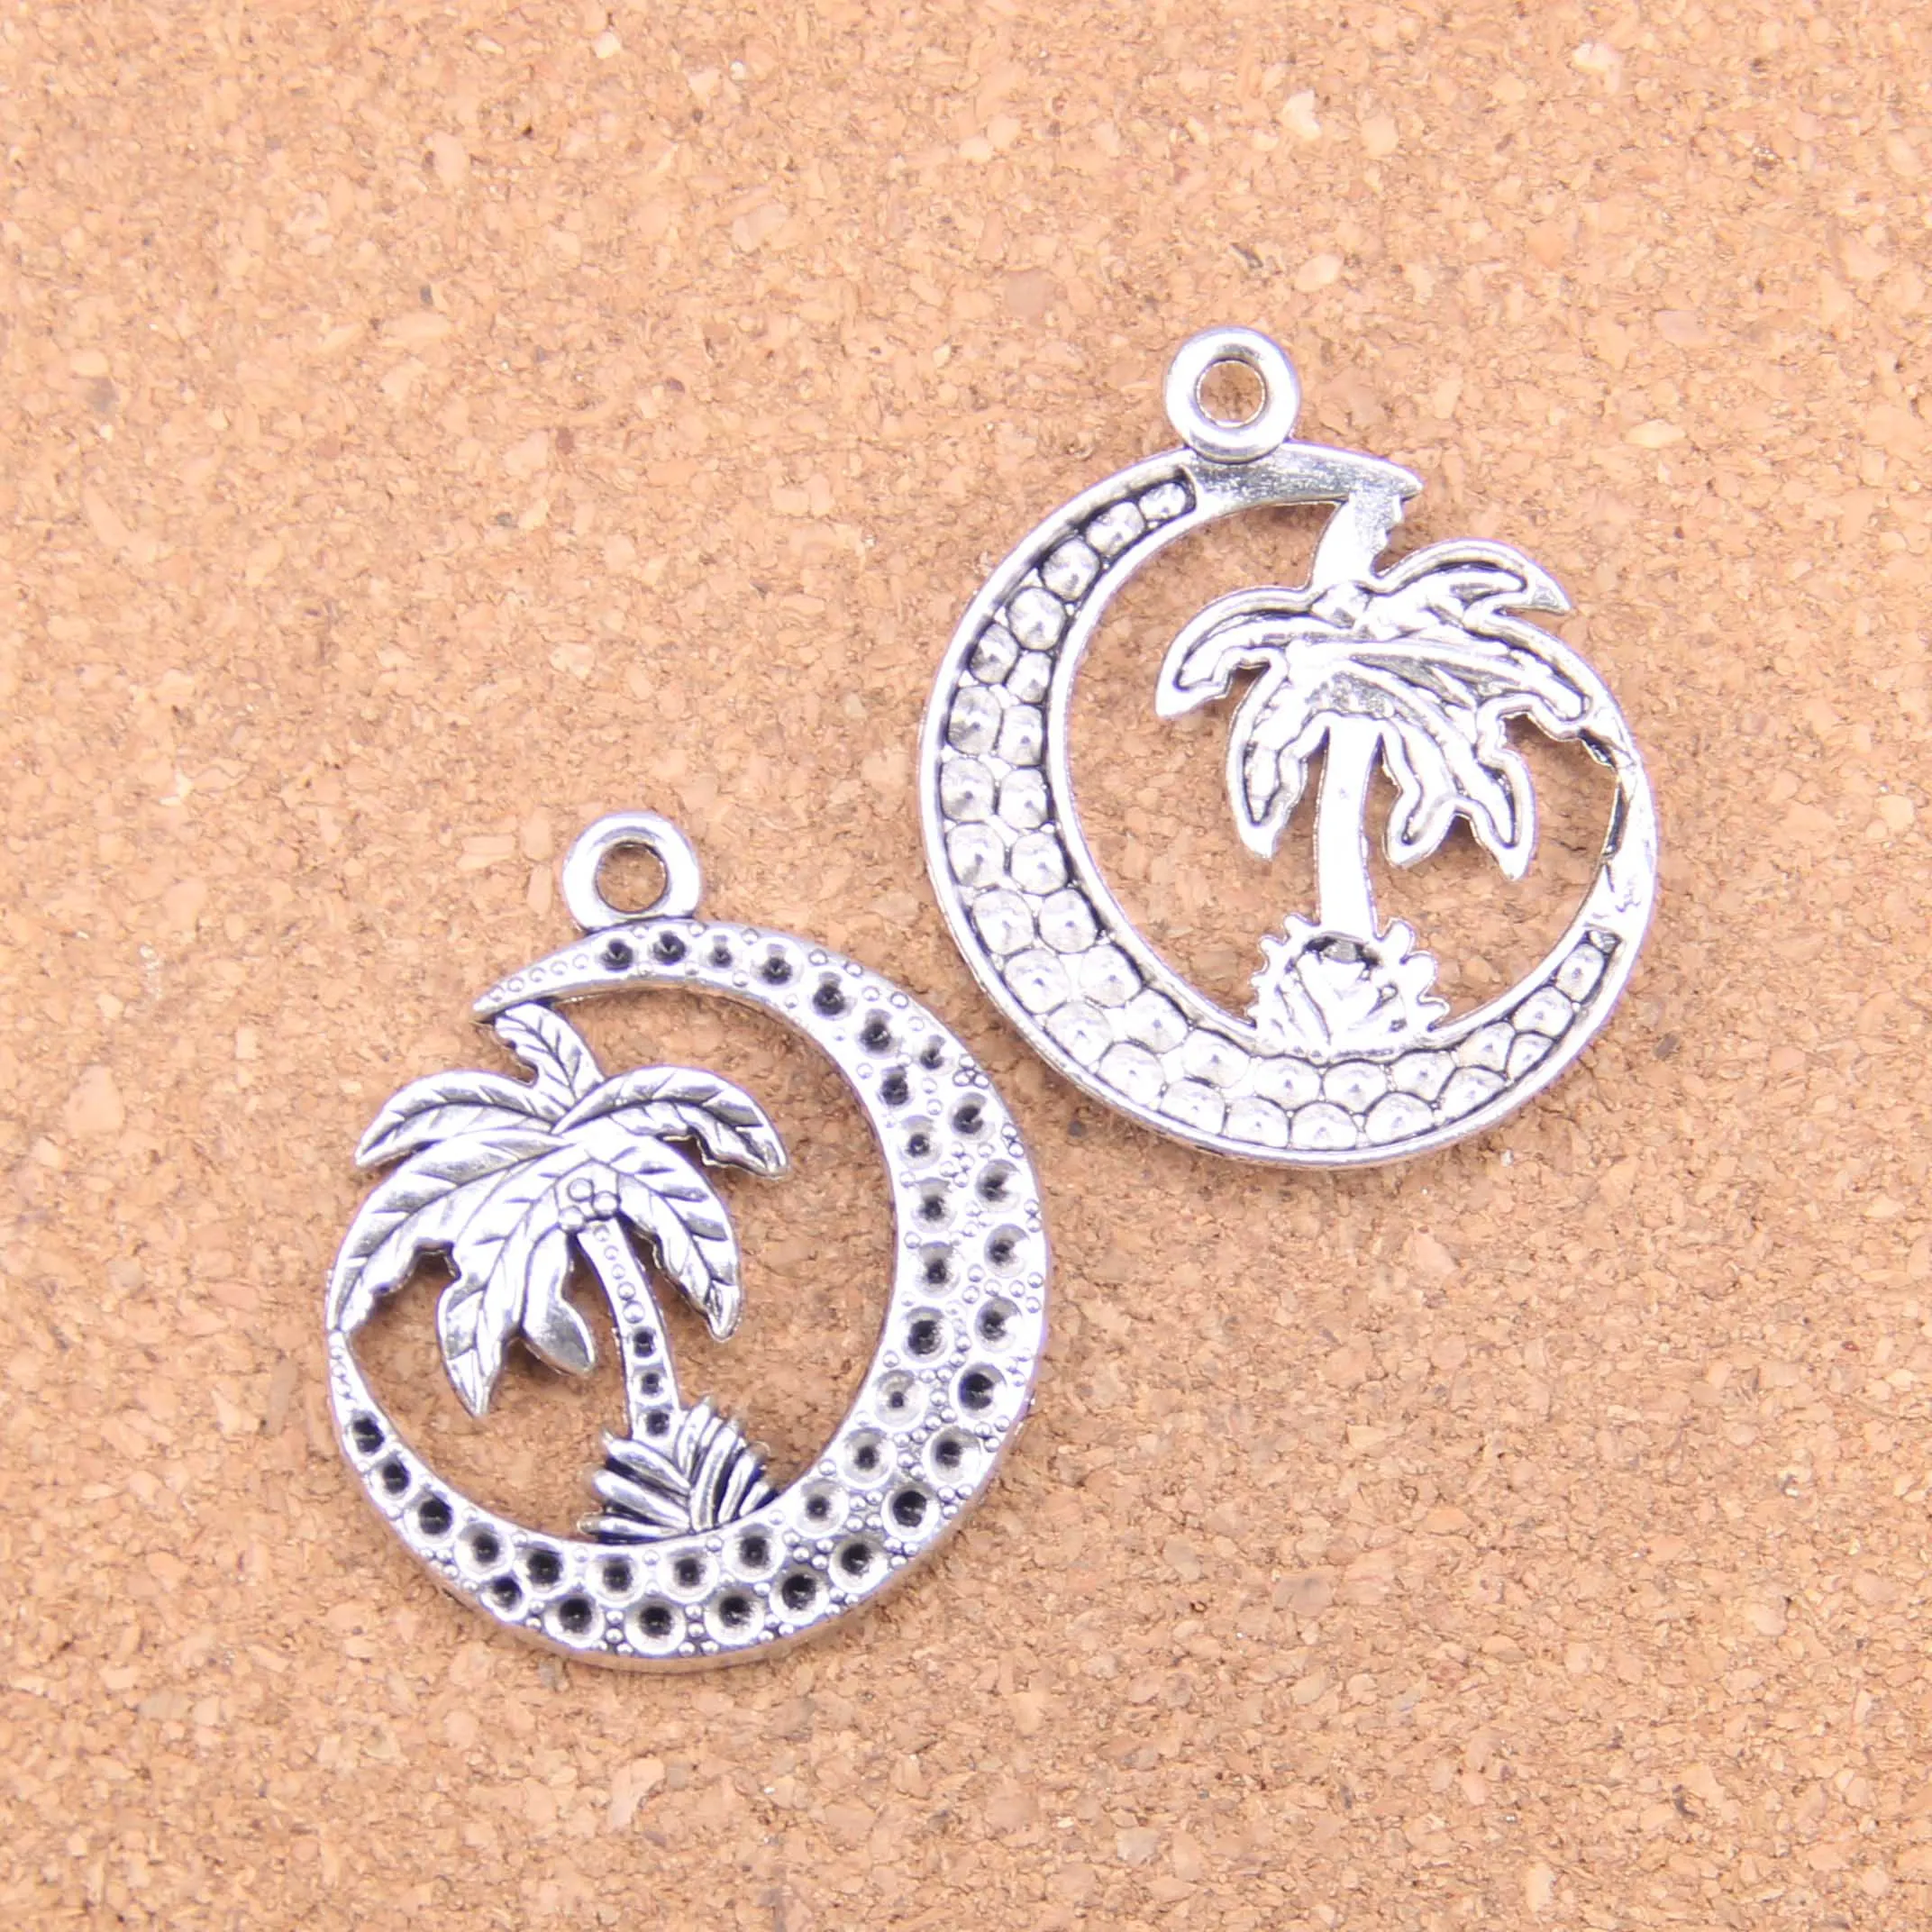 25pcs Charms palm tree moon coconut 37x30mm Antique Pendants,Vintage Tibetan Silver Jewelry,DIY for bracelet necklace